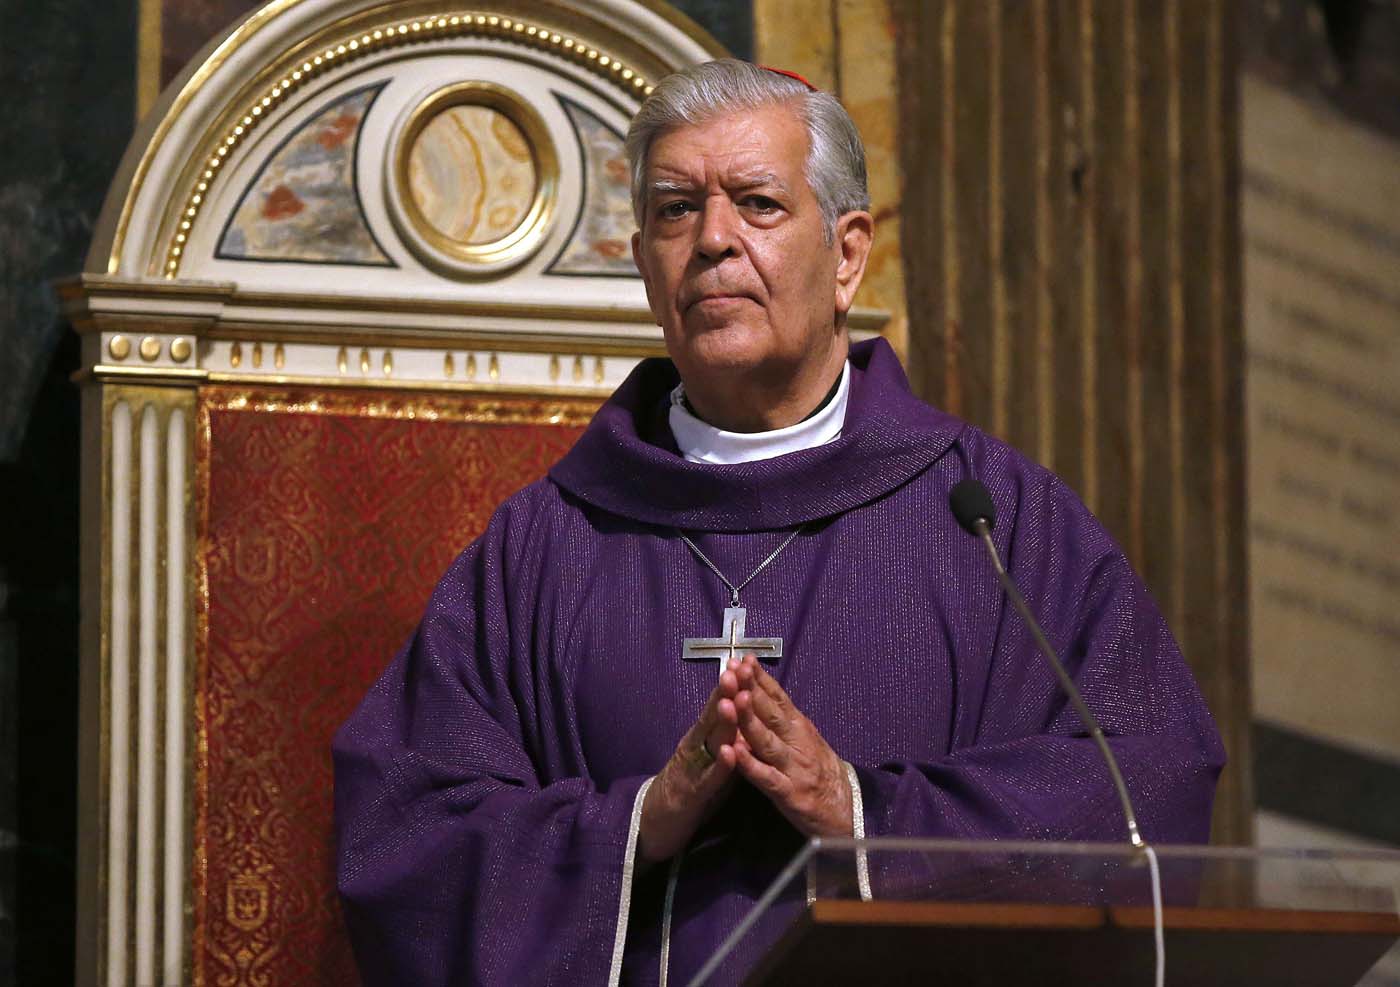 Cardenal Urosa Savino sobre el 8D: El voto debe ser libre y no coaccionado